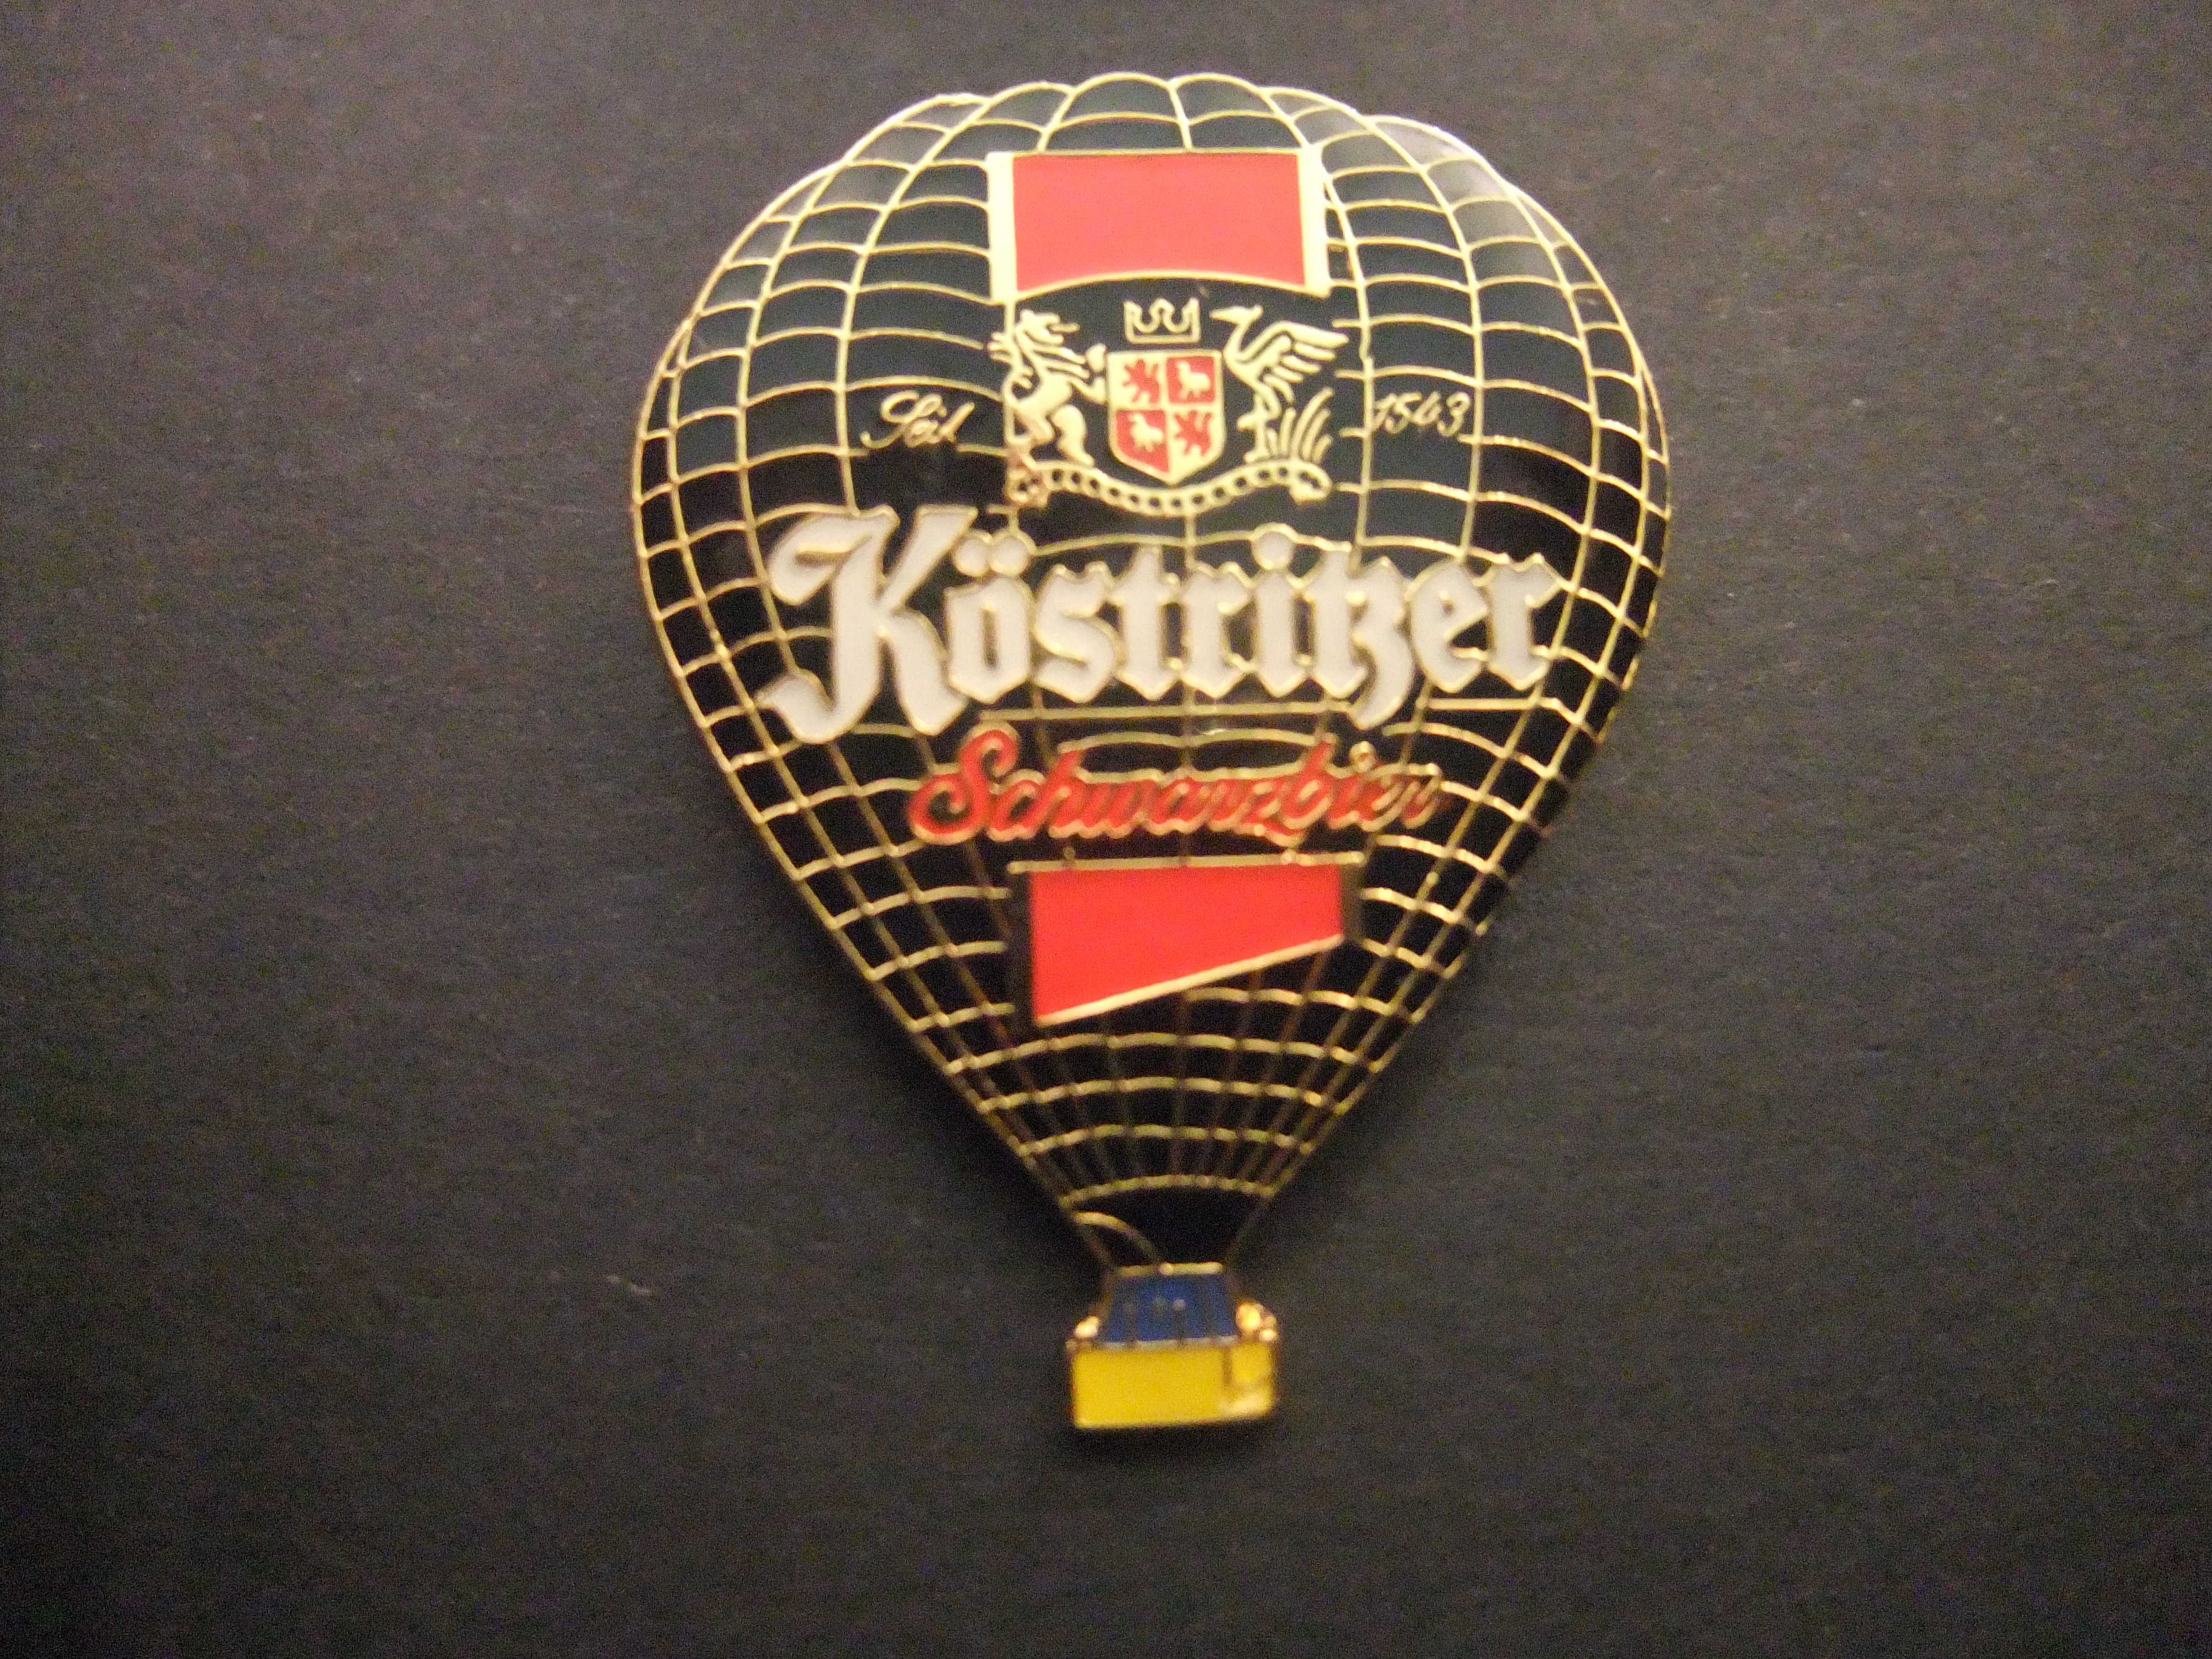 Köstritzer Schwarzbier Duits donkerbier heteluchtballon